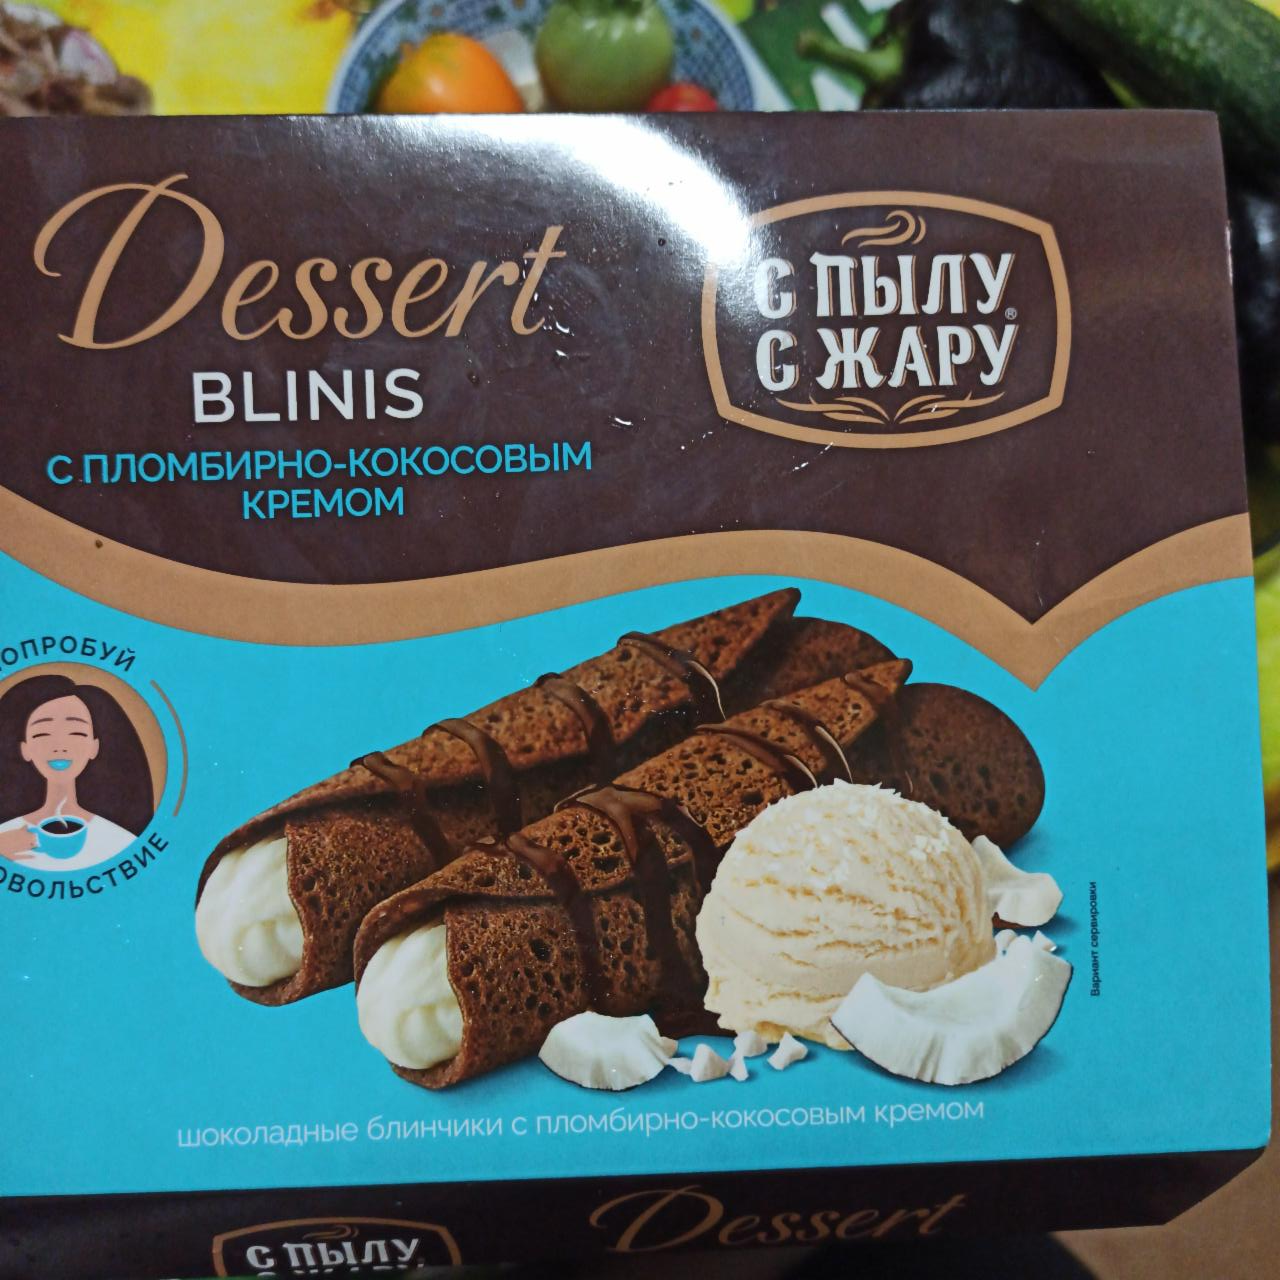 Фото - Dessert blinis с пломбирно-кокосовым кремом С пылу с жару